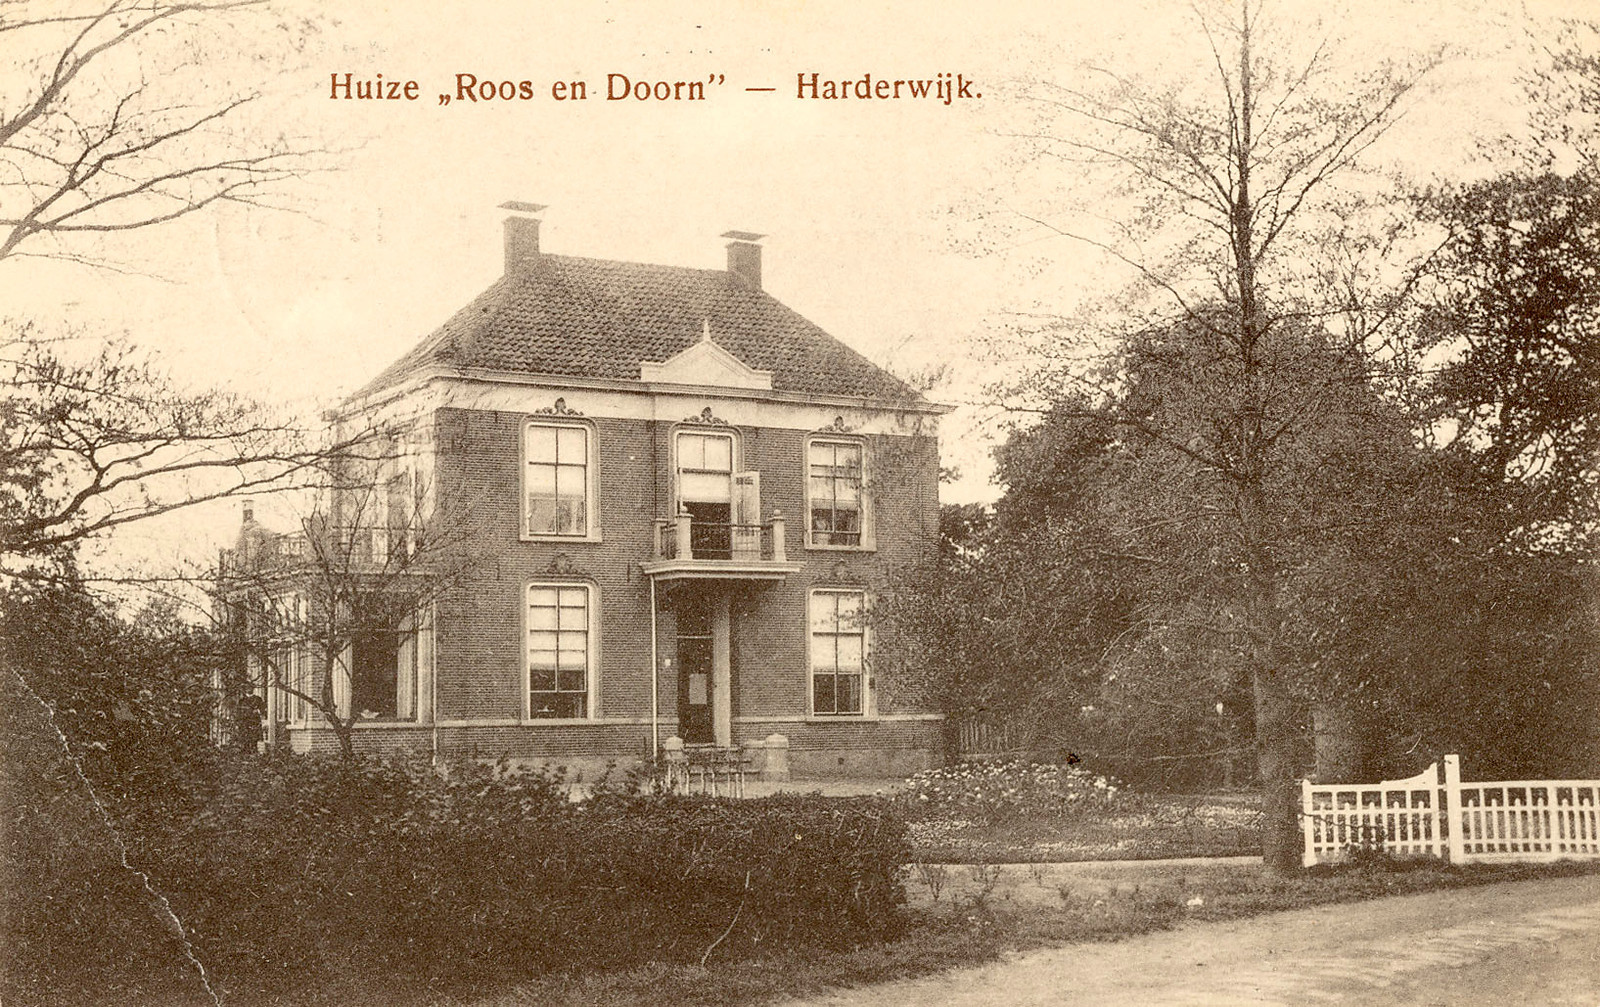 Huize Doorn en Roos Harderwijk